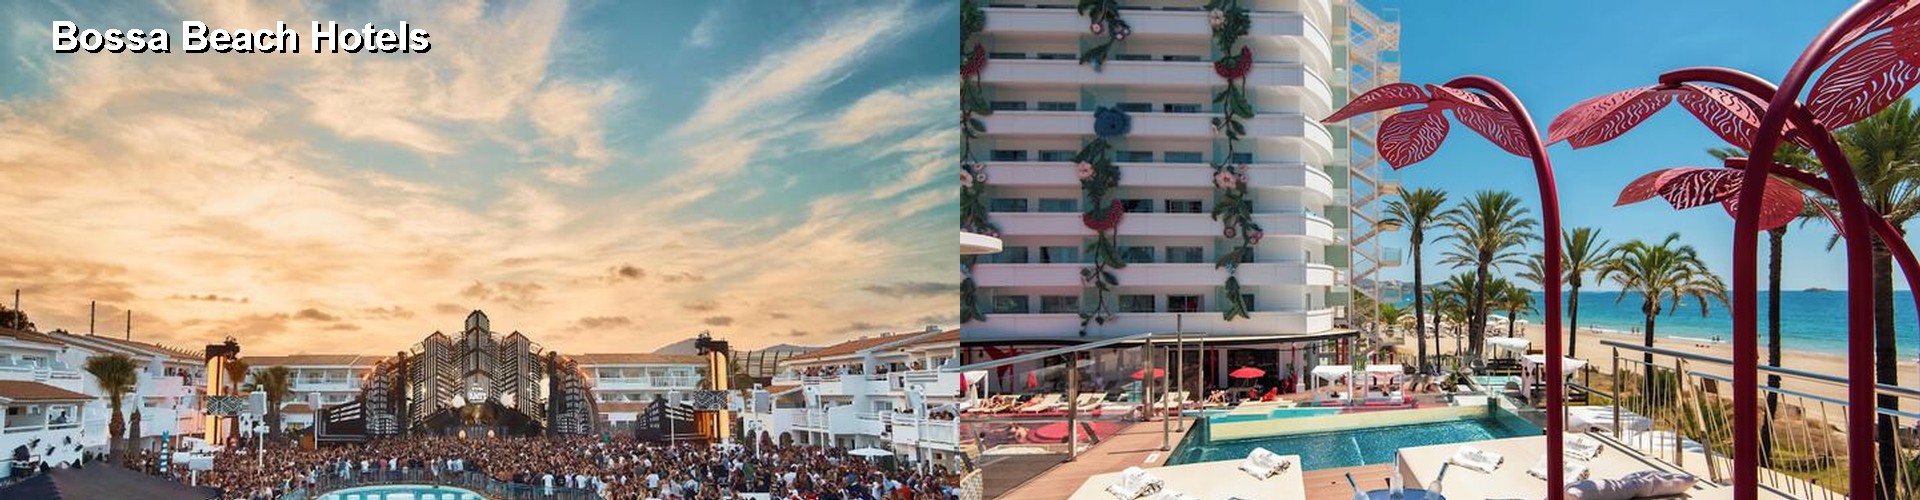 5 Best Hotels near Bossa Beach